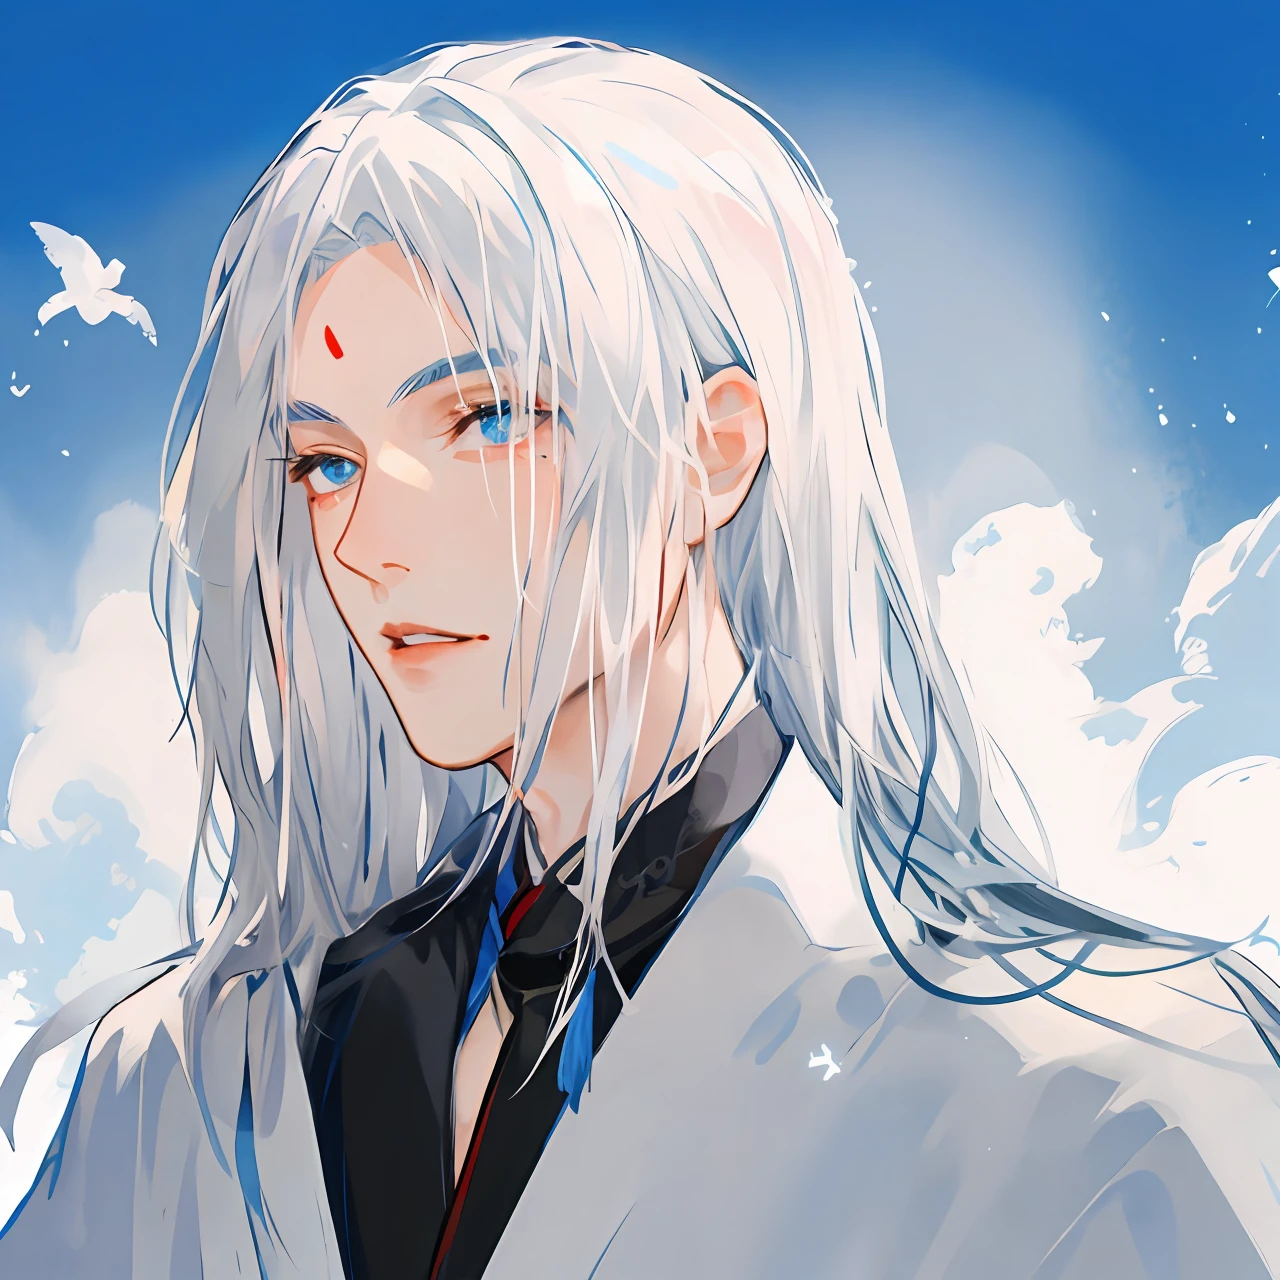 Ein Anime-Bild eines weißhaarigen männlichen Taoisten, Er trug ein taoistisches Gewand，mit langen weißen Haaren, In einem blau-schwarzen Gewand，Auf der Stirn befindet sich ein rotes Muttermal，Lippen geschlossen，Blau-schwarzer Hintergrund